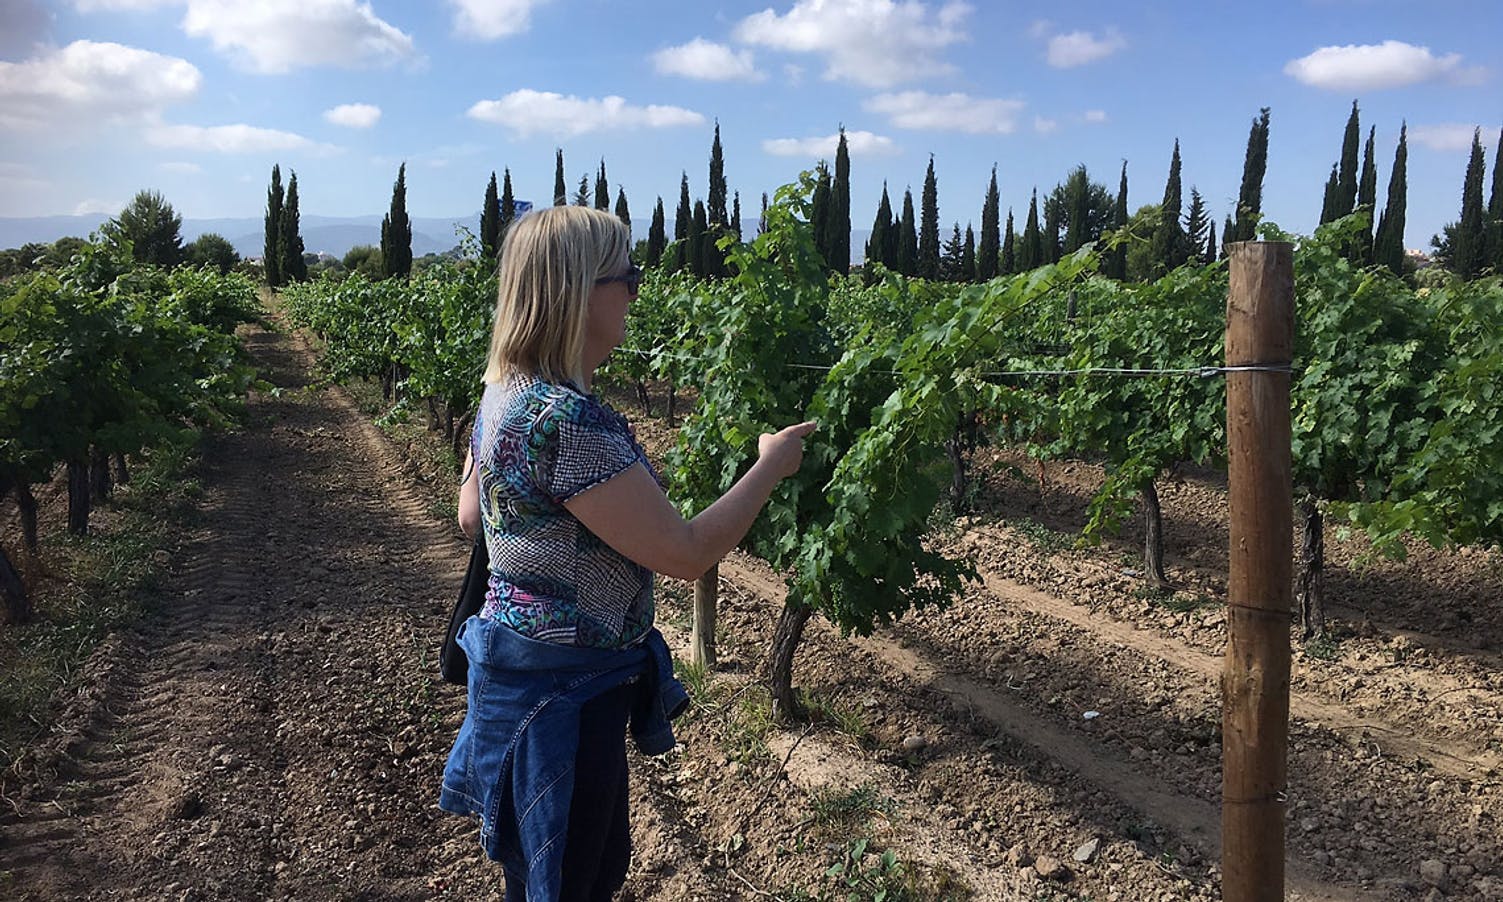 Det blir òg vandring i olivenlund og konsert på vingård. (Foto: Os Travel)